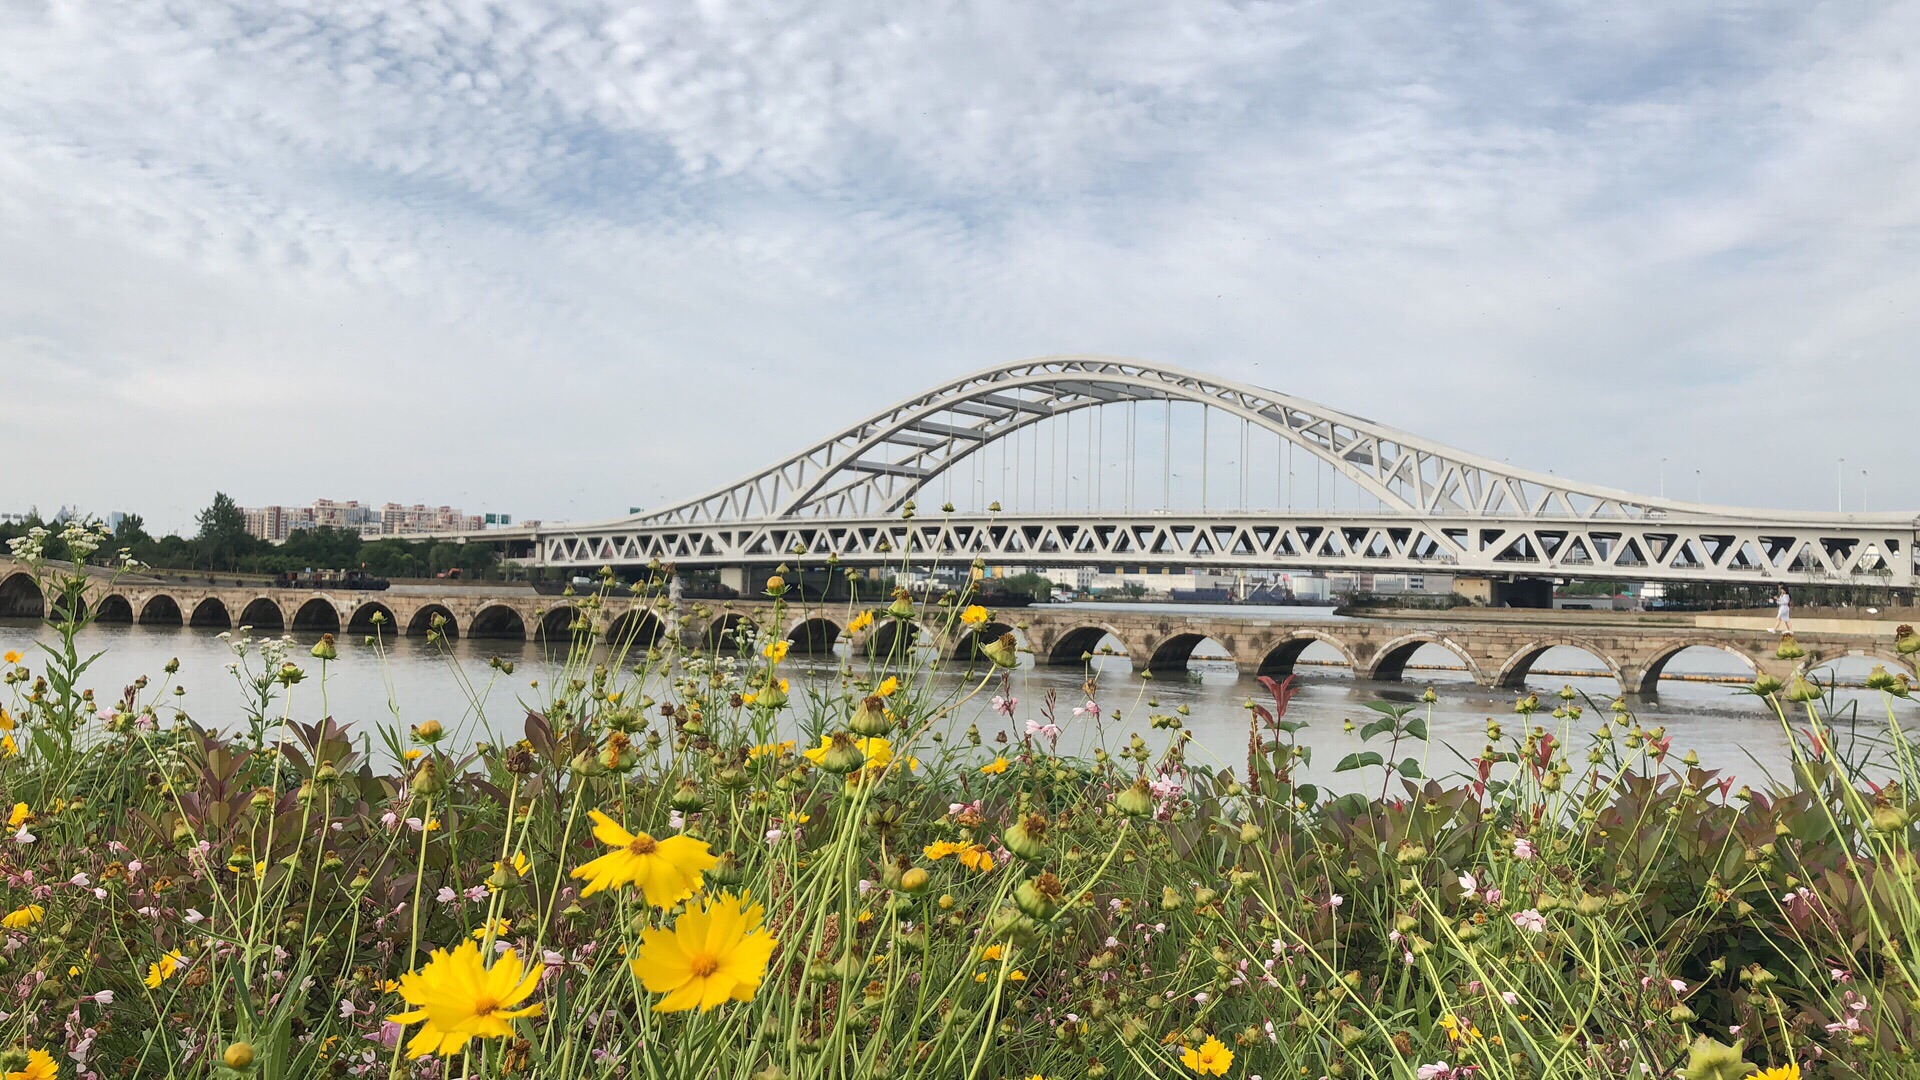 【携程攻略】苏州三步二桥景点,三步二桥俗称双桥，是甪直古镇的一大重要标志。甪直是中国著名的桥乡…